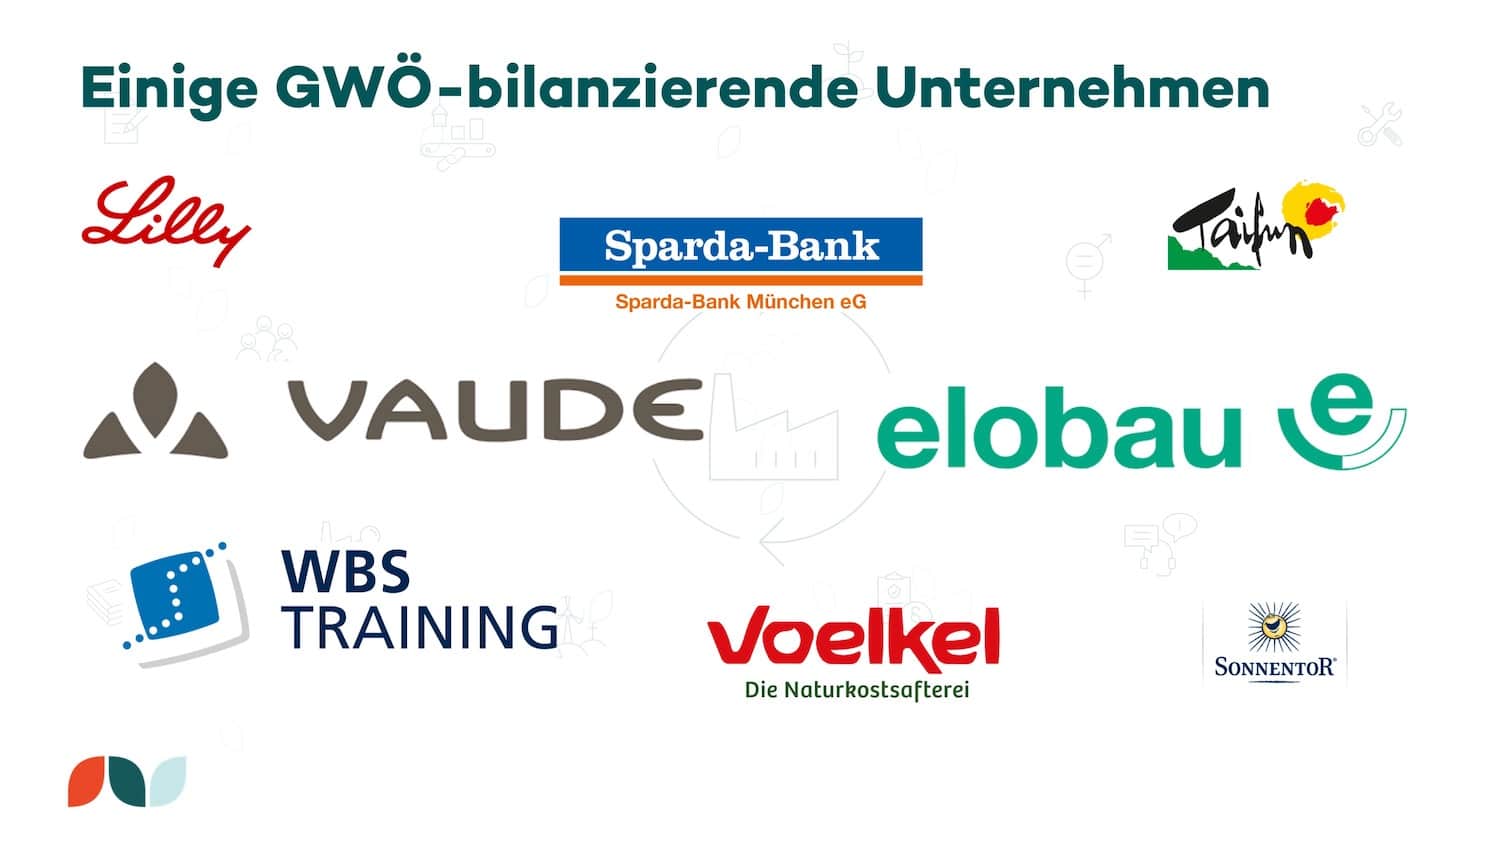 Einige GWÖ-bilanzierende Unternehmen